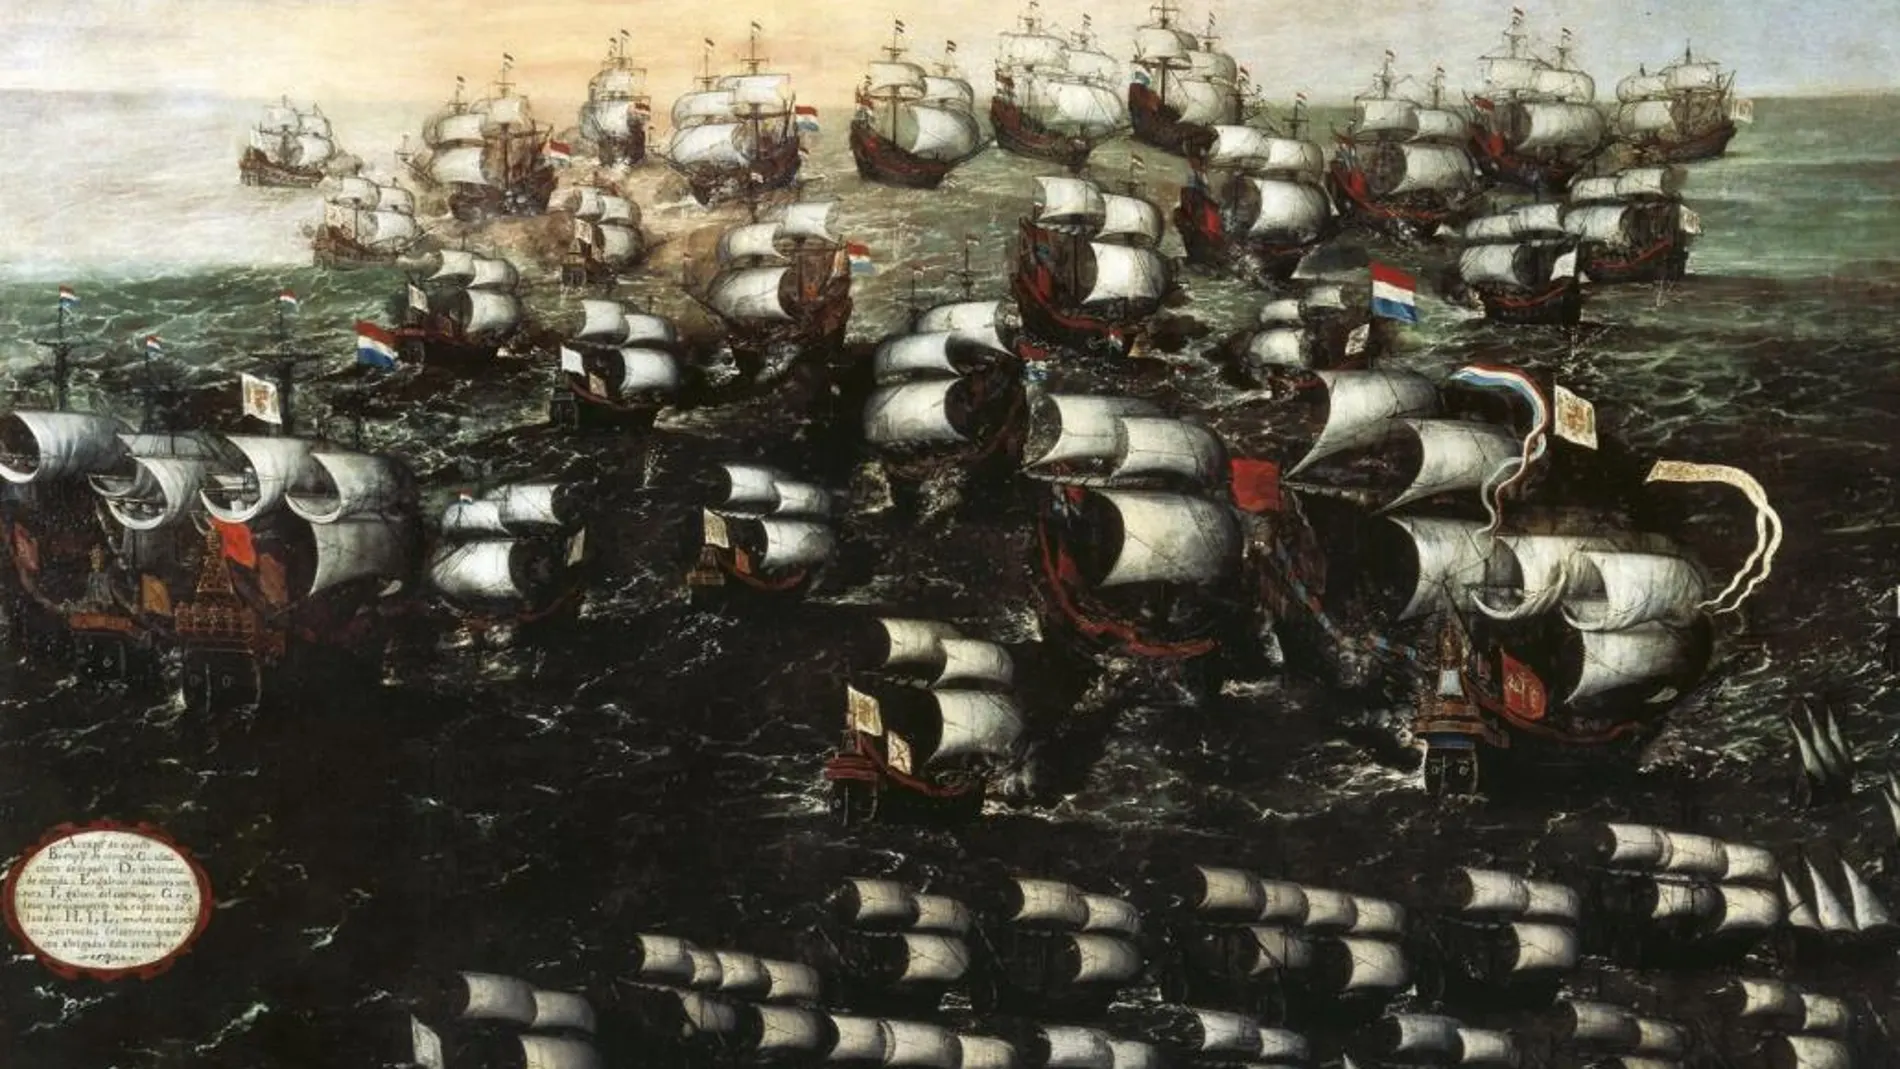 El combate fue relatado de principio a fin en los cuadros de Juan de la Corte (en la imagen, la vista IV), toda una crónica del triunfo del almirante vasco